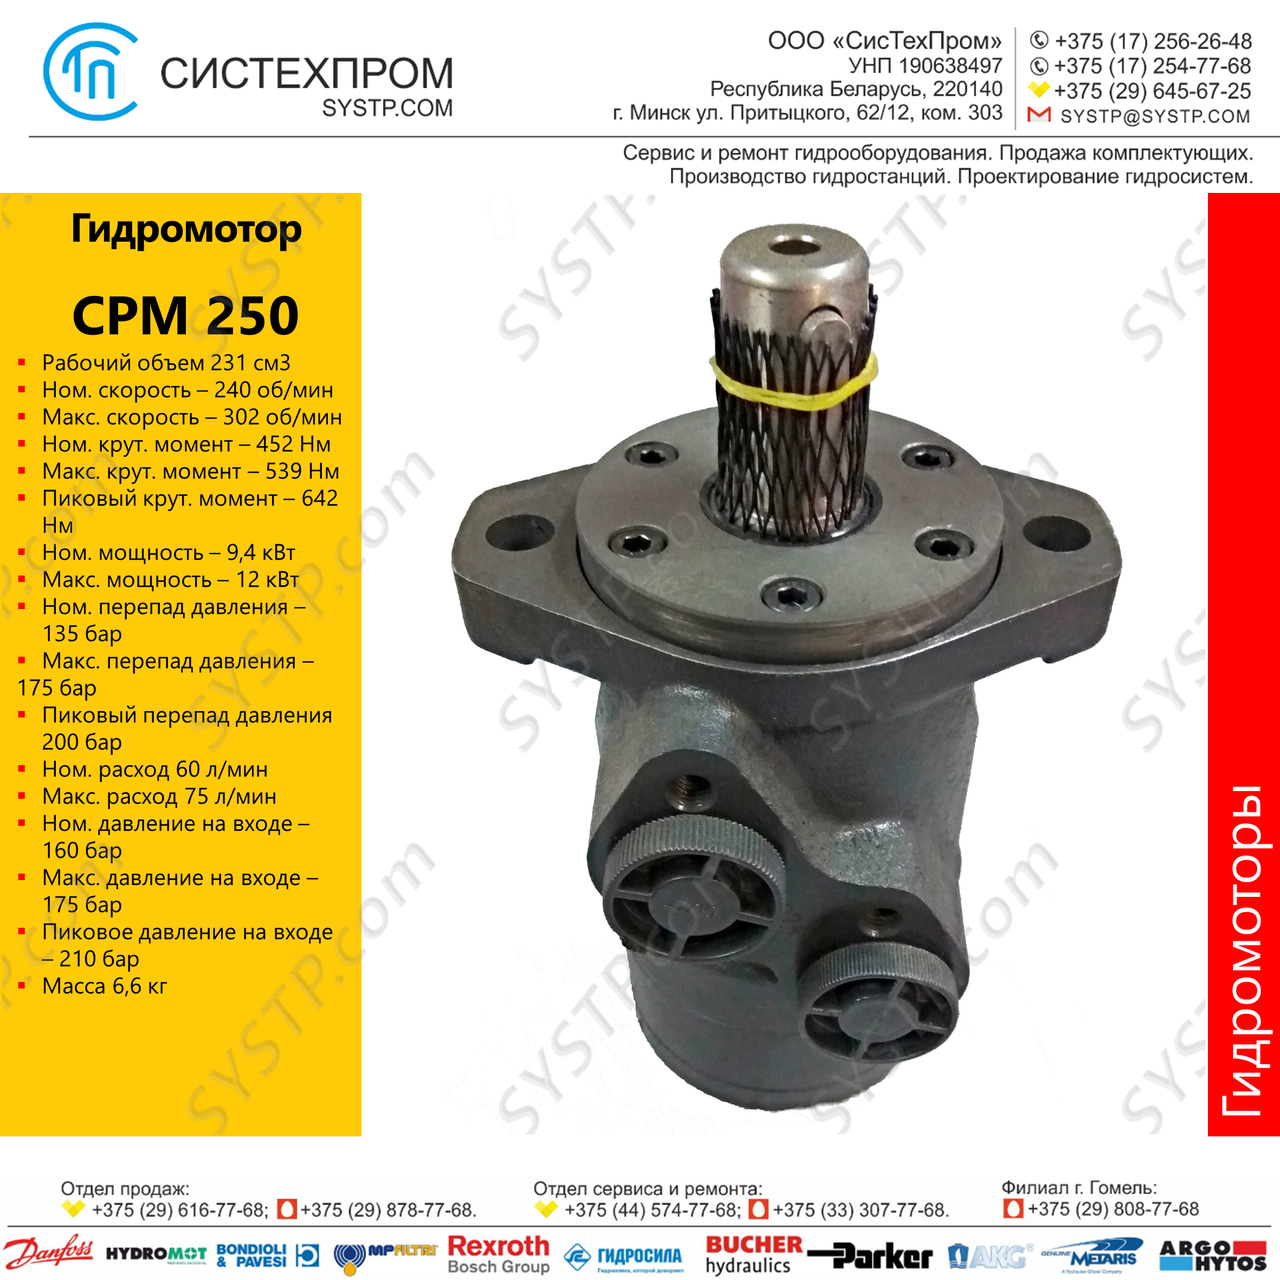 Гидромотор CPM250CD, фото 1